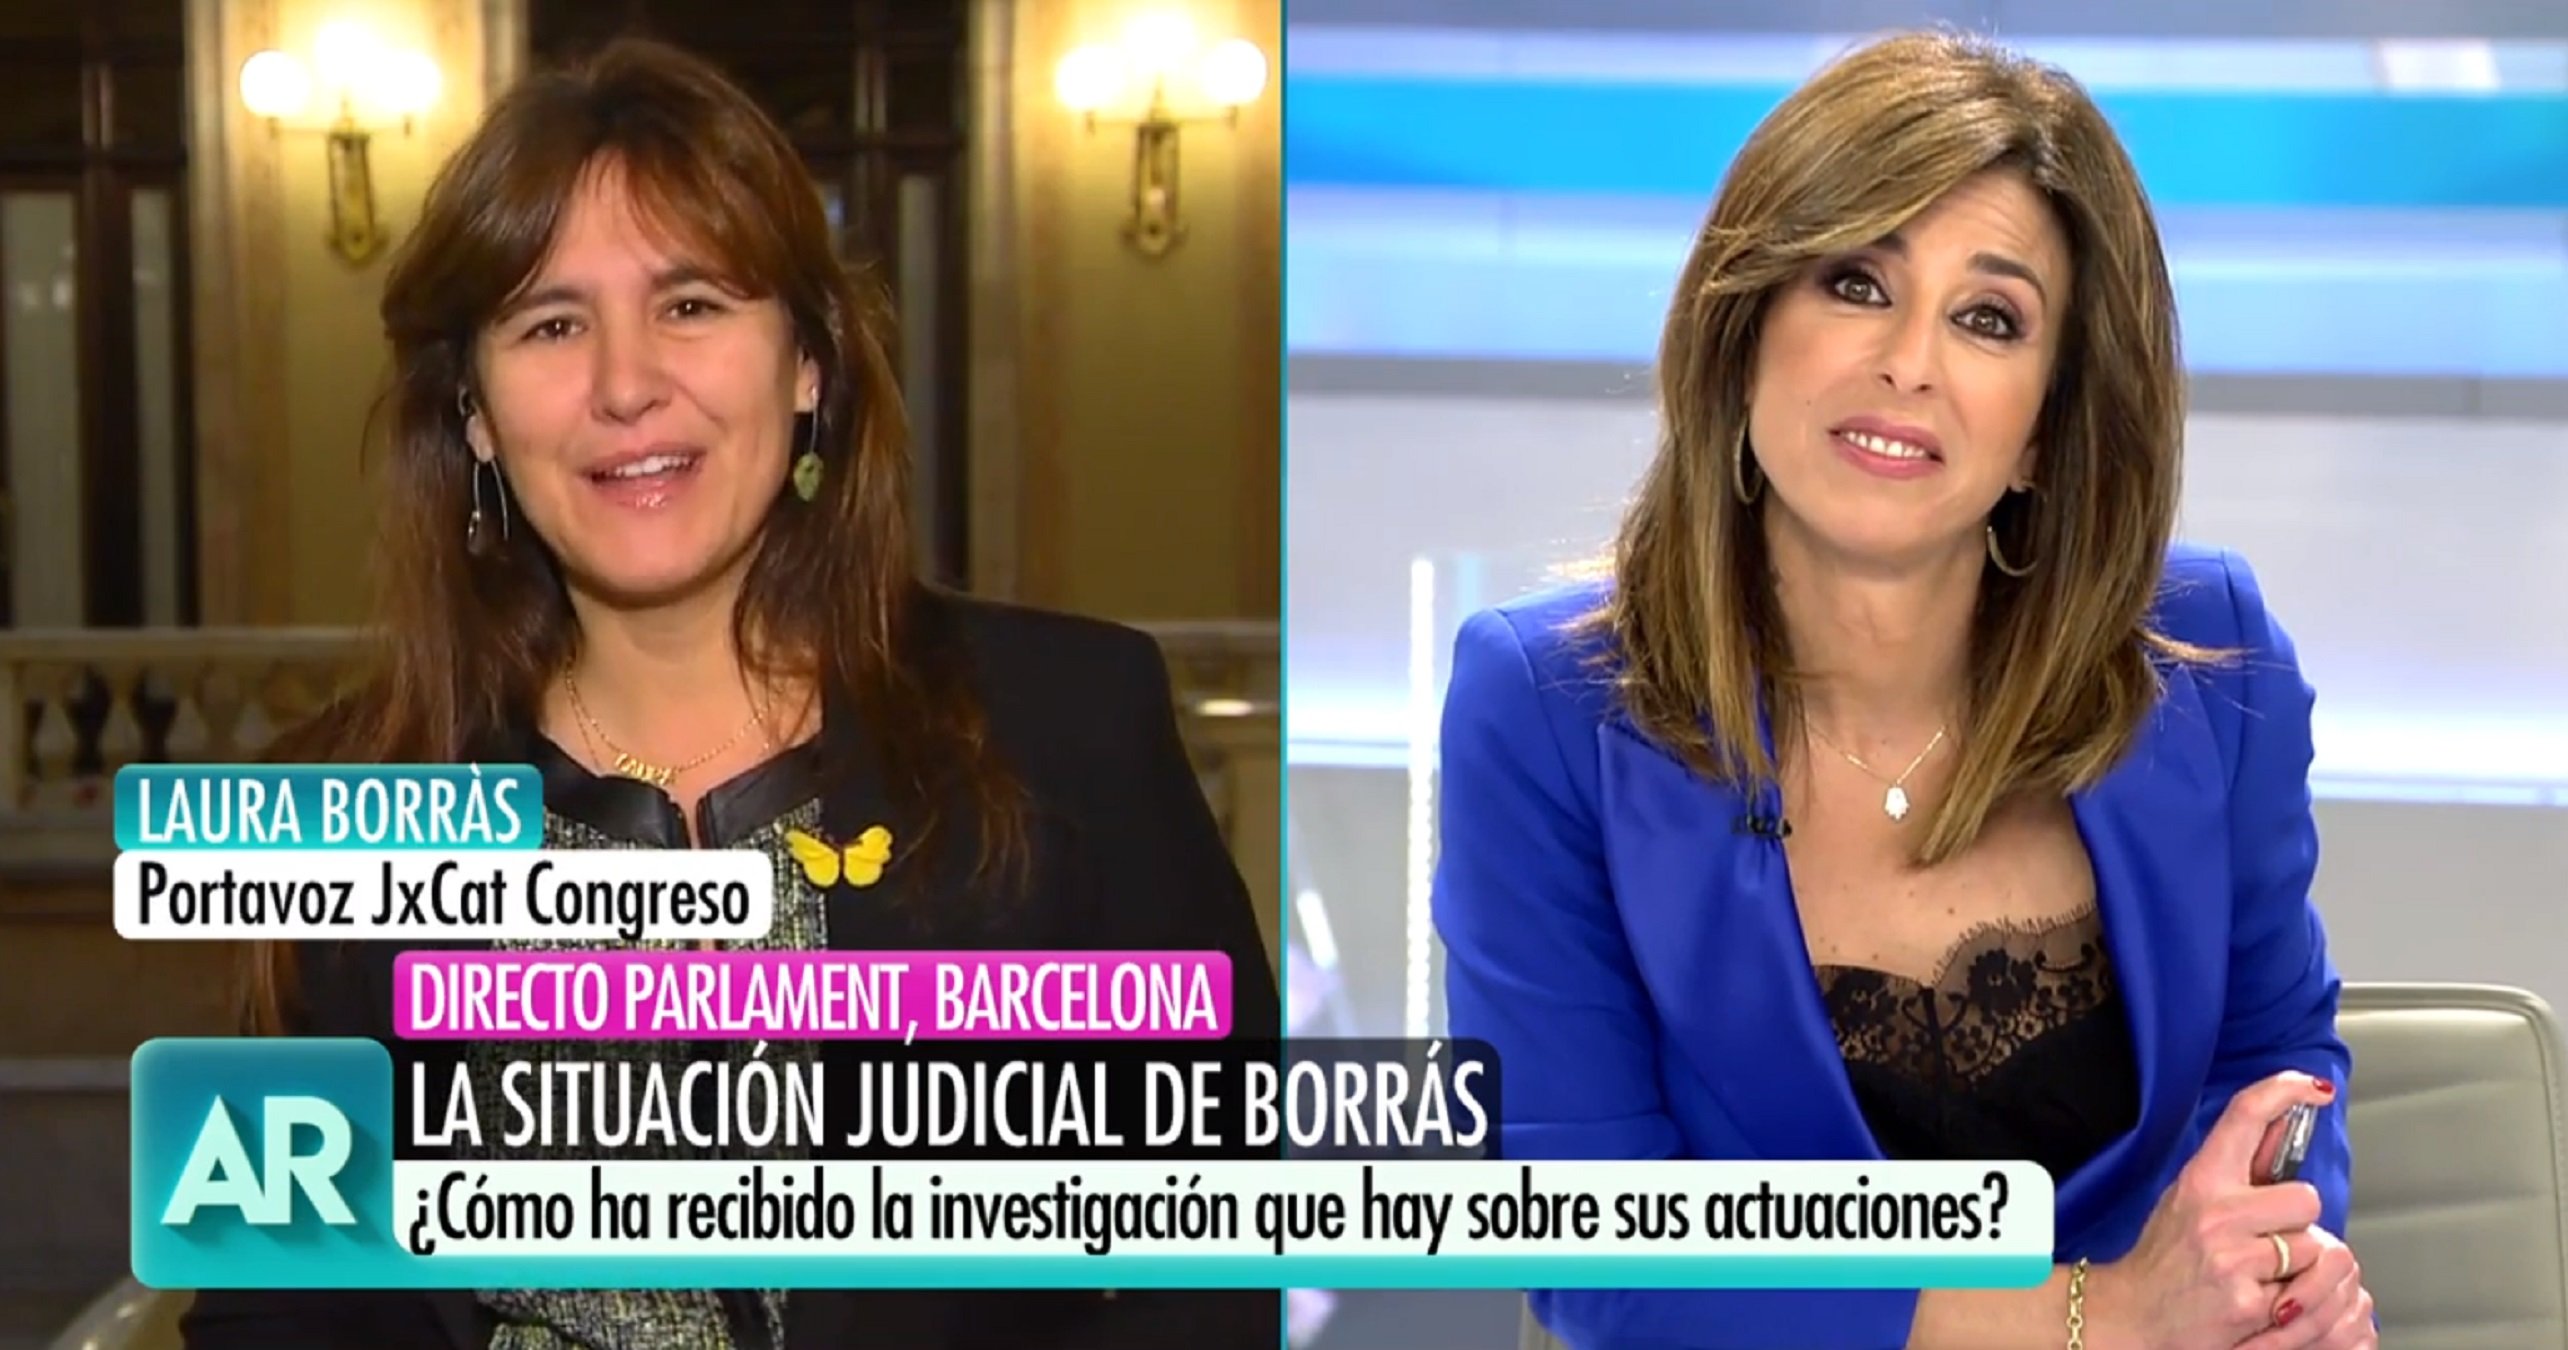 Sopapo antológico de Laura Borràs a una presentadora de Ana Rosa por ir de sobrada